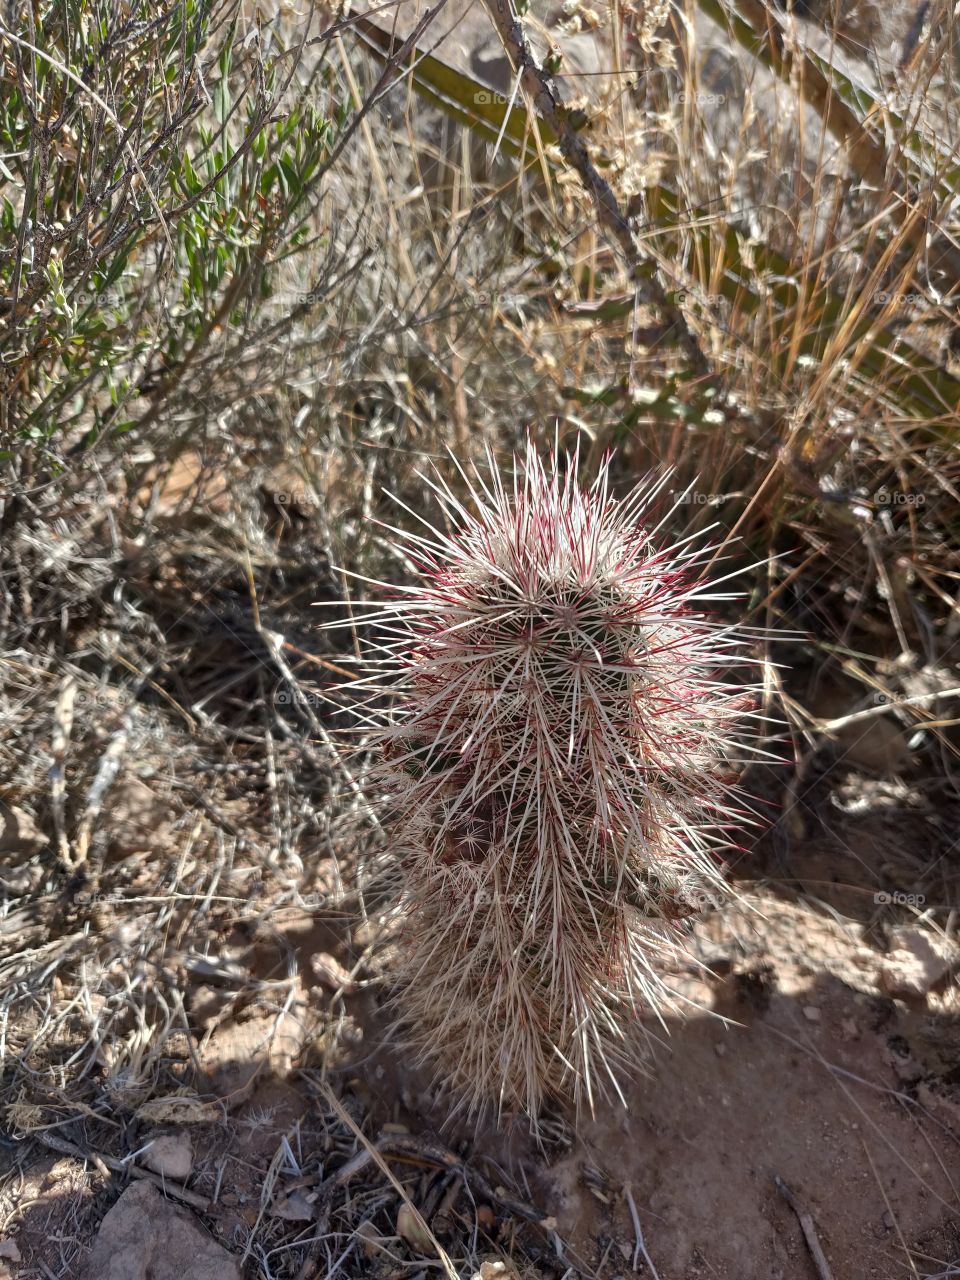 Cactus, Sharp, Desert, Nature, Prickly